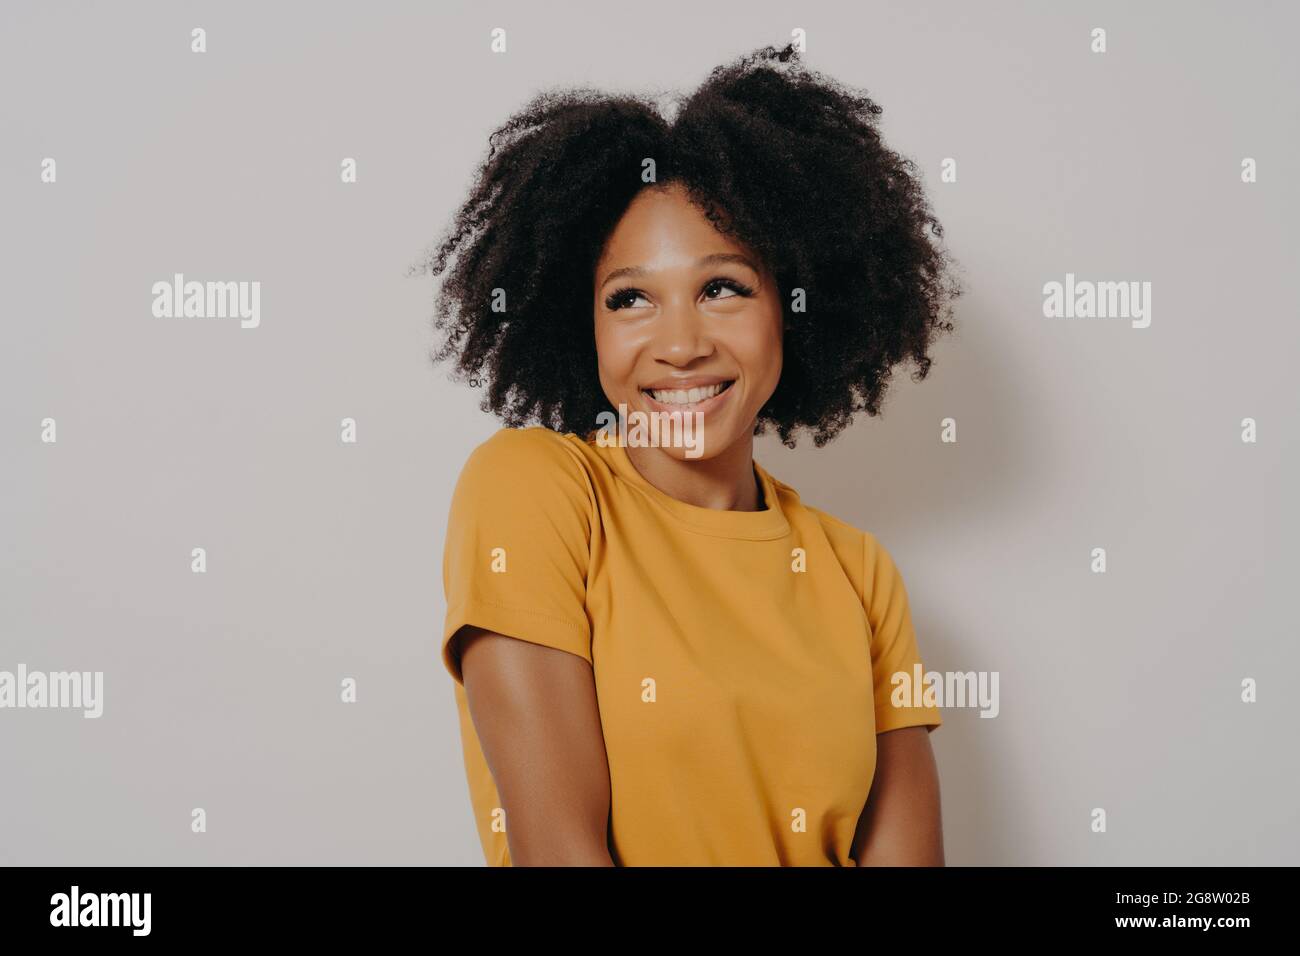 Studio geschossen Nahaufnahme Porträt von lässig gekleideten afroamerikanischen Mädchen mit lustigen Gesichtsausdruck Stockfoto